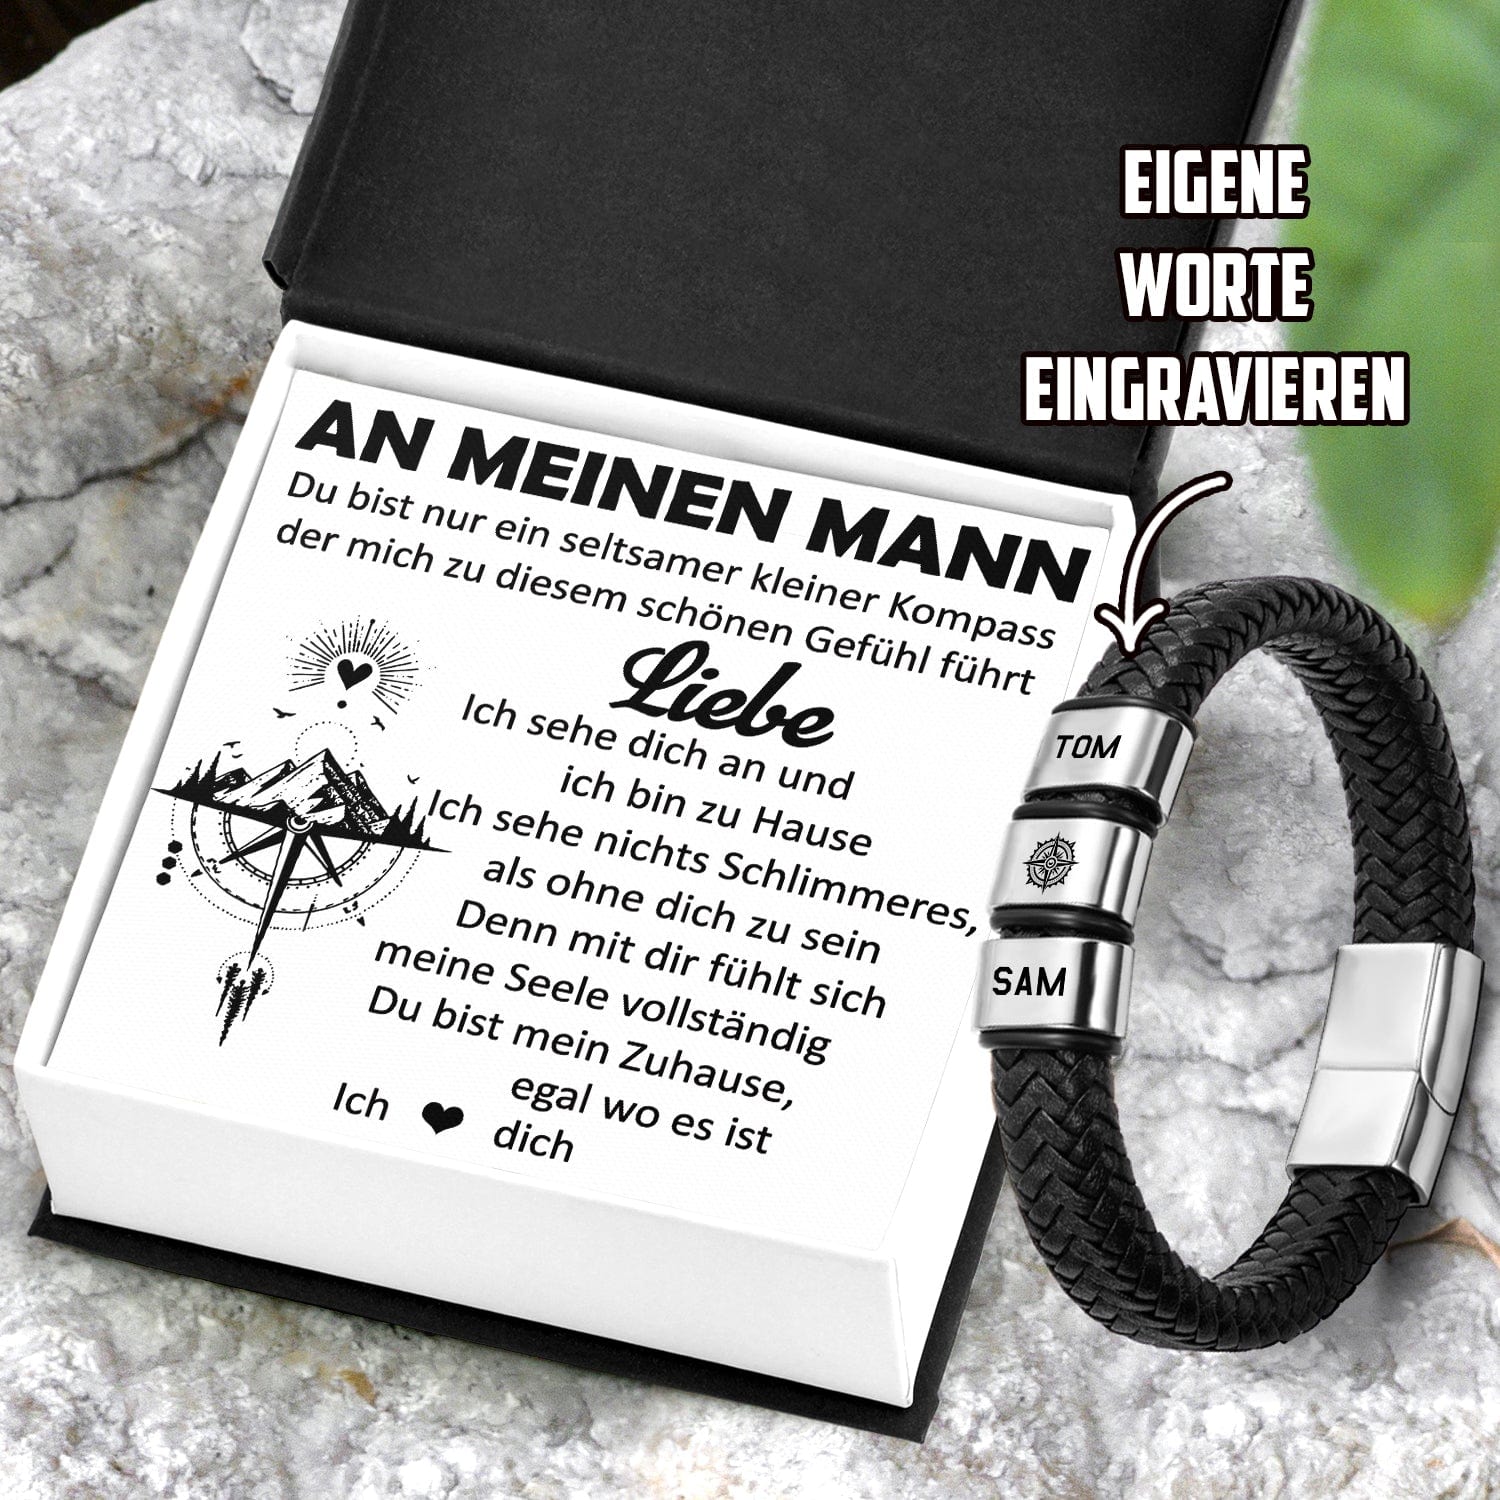 Personalisiertes Leder-Armband - Wandern - An Meinen Mann - Du Bist Nur Ein Seltsamer Kleiner Kompass - Degbzl26009